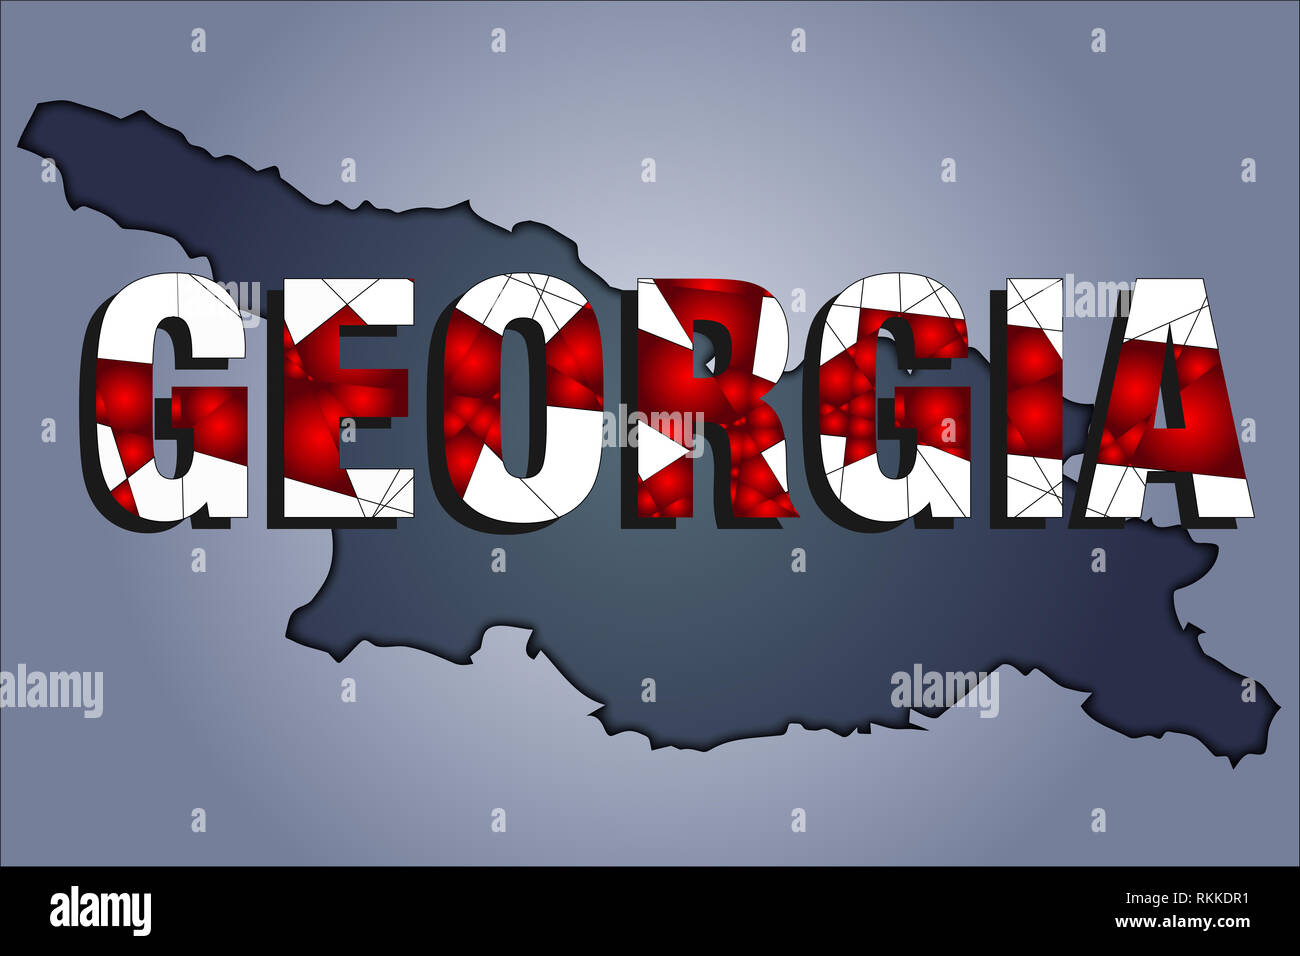 Die Konturen der Gebiet von Georgien Republik in grauen Farben und Wort Georgien in den Farben der oficial Flagge, Rot und Weiß Stockfoto